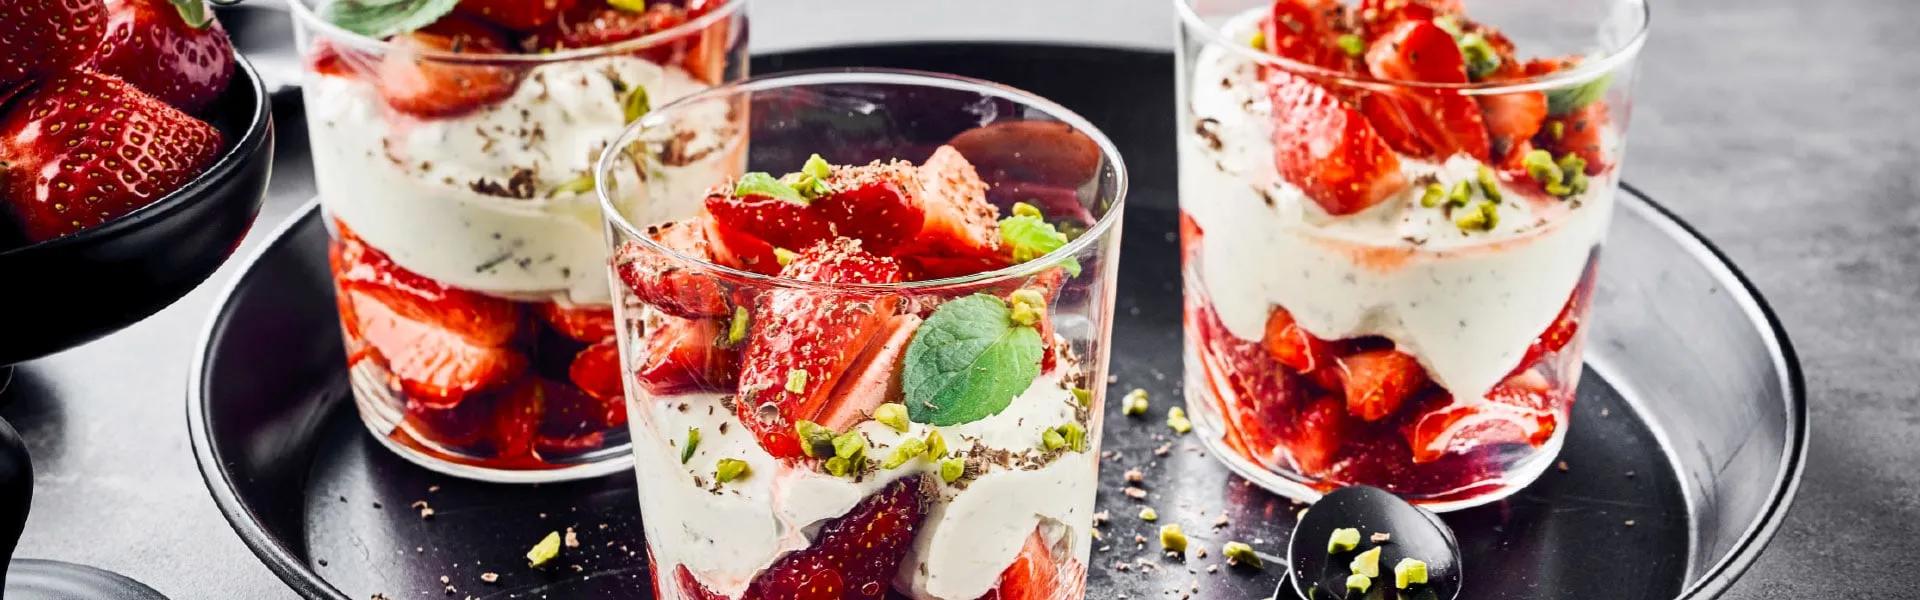 Erdbeer-Mascarpone-Dessert - Am liebsten WEZ